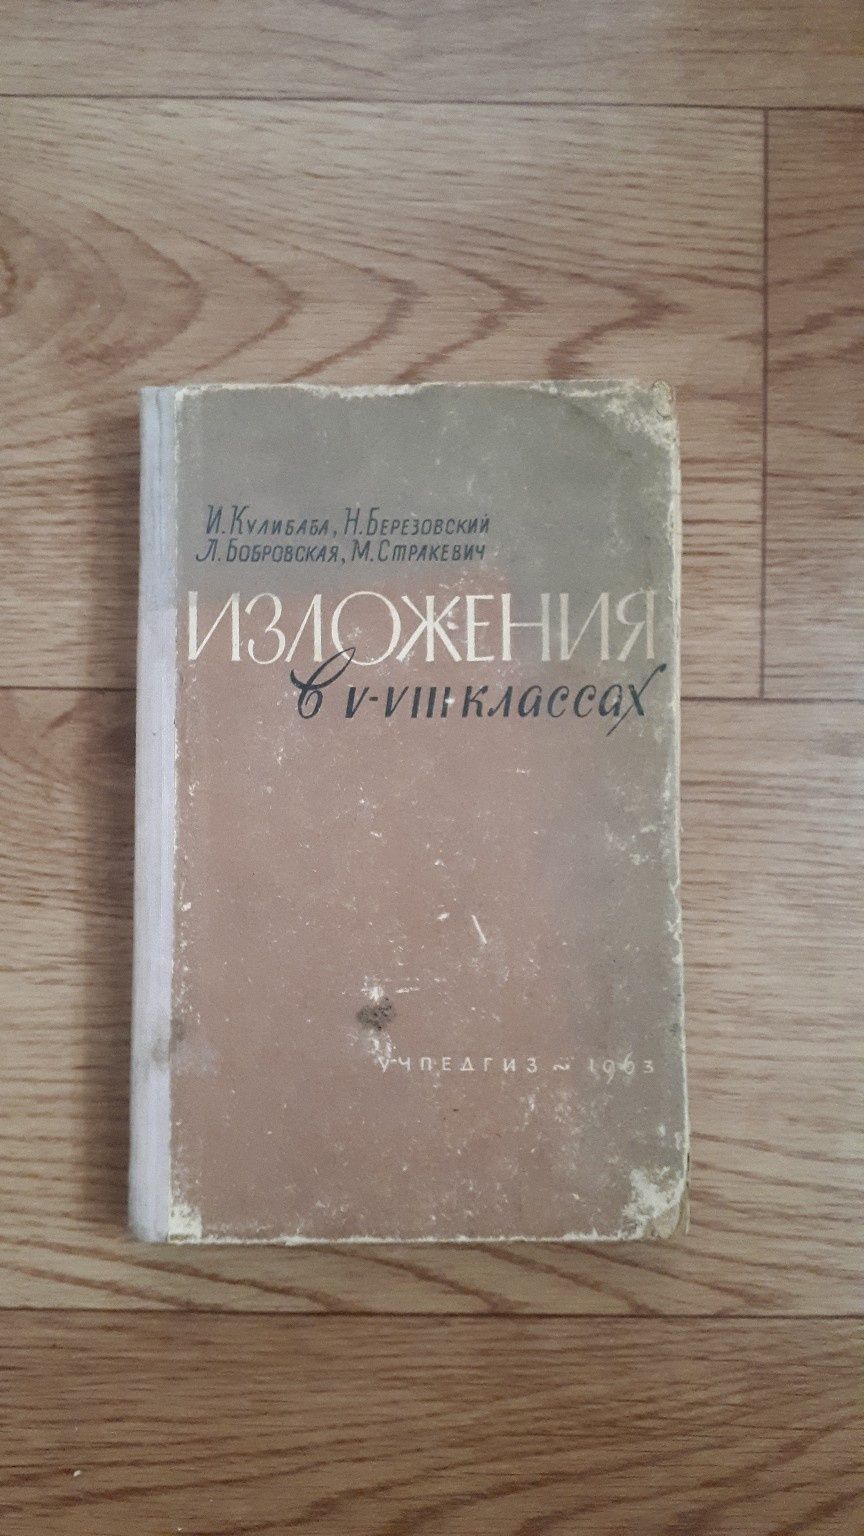 Книги Учебники времен СССР